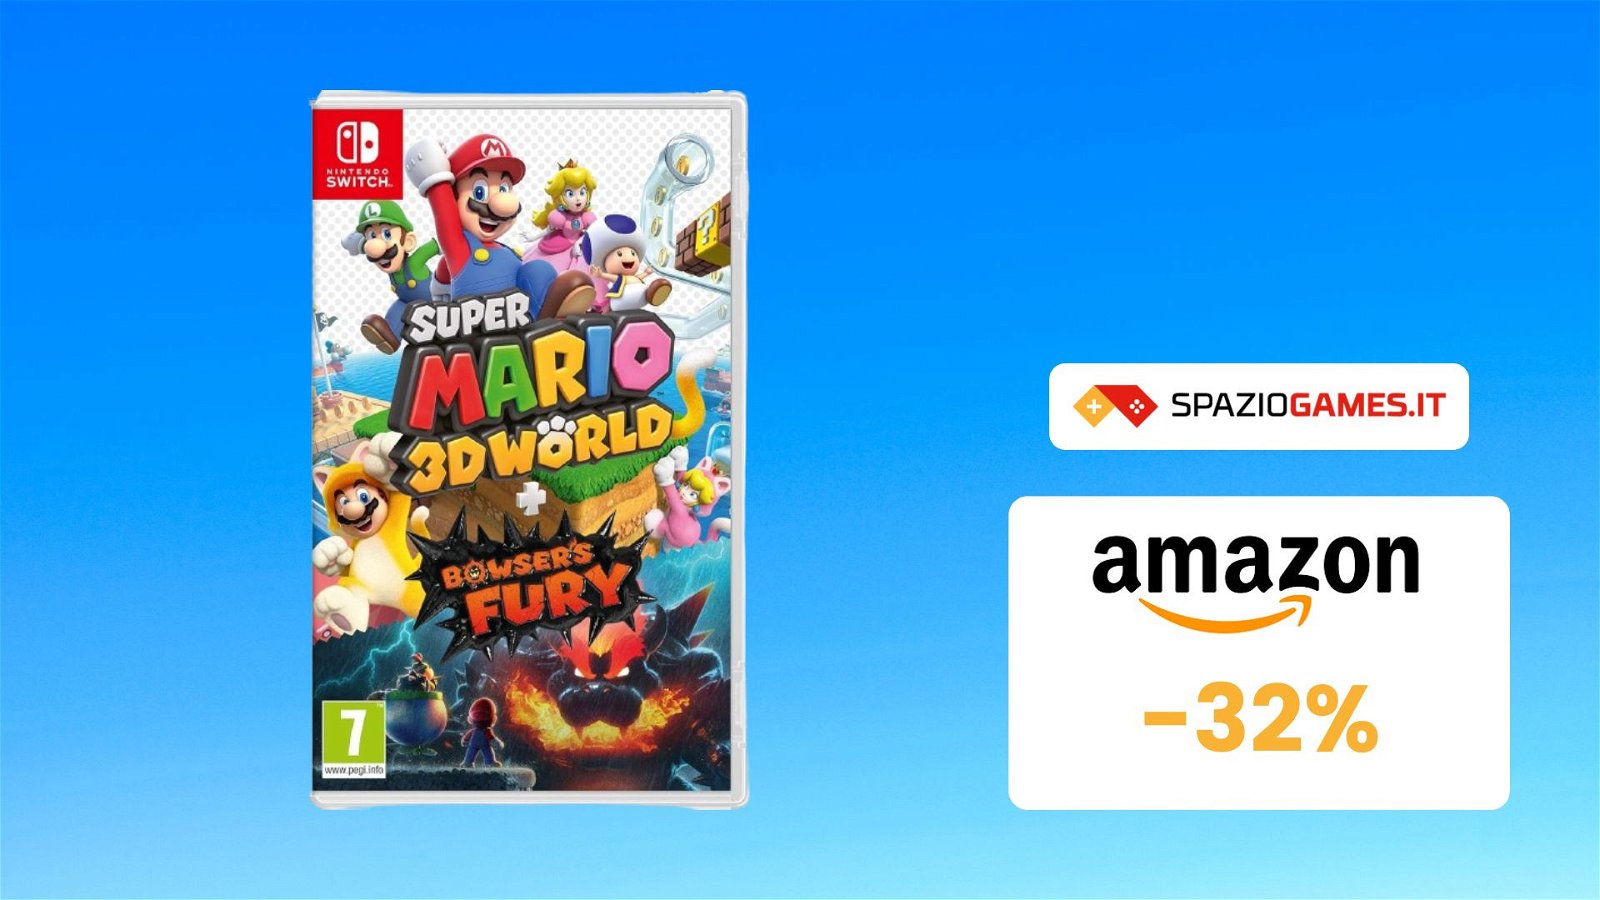 Super Mario 3D World + Bowser’s Fury, uno dei migliori platform per Switch, con il 32% di SCONTO!